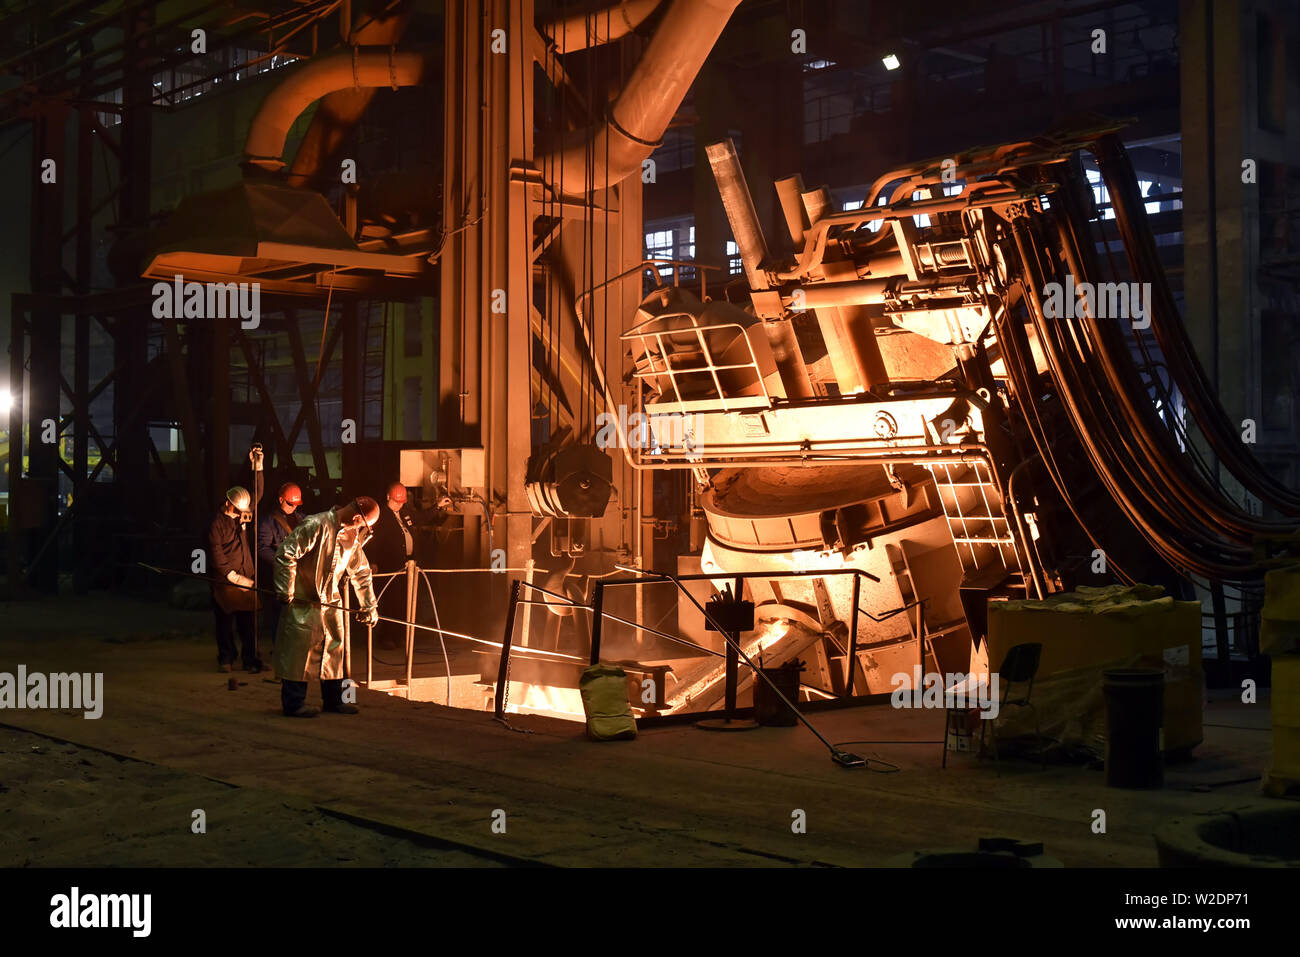 Arbeiter in Schutzkleidung in einer Gießerei, die bei der Herstellung von Stahl Komponenten - Arbeitsplatz industriellen Fabrik Stockfoto